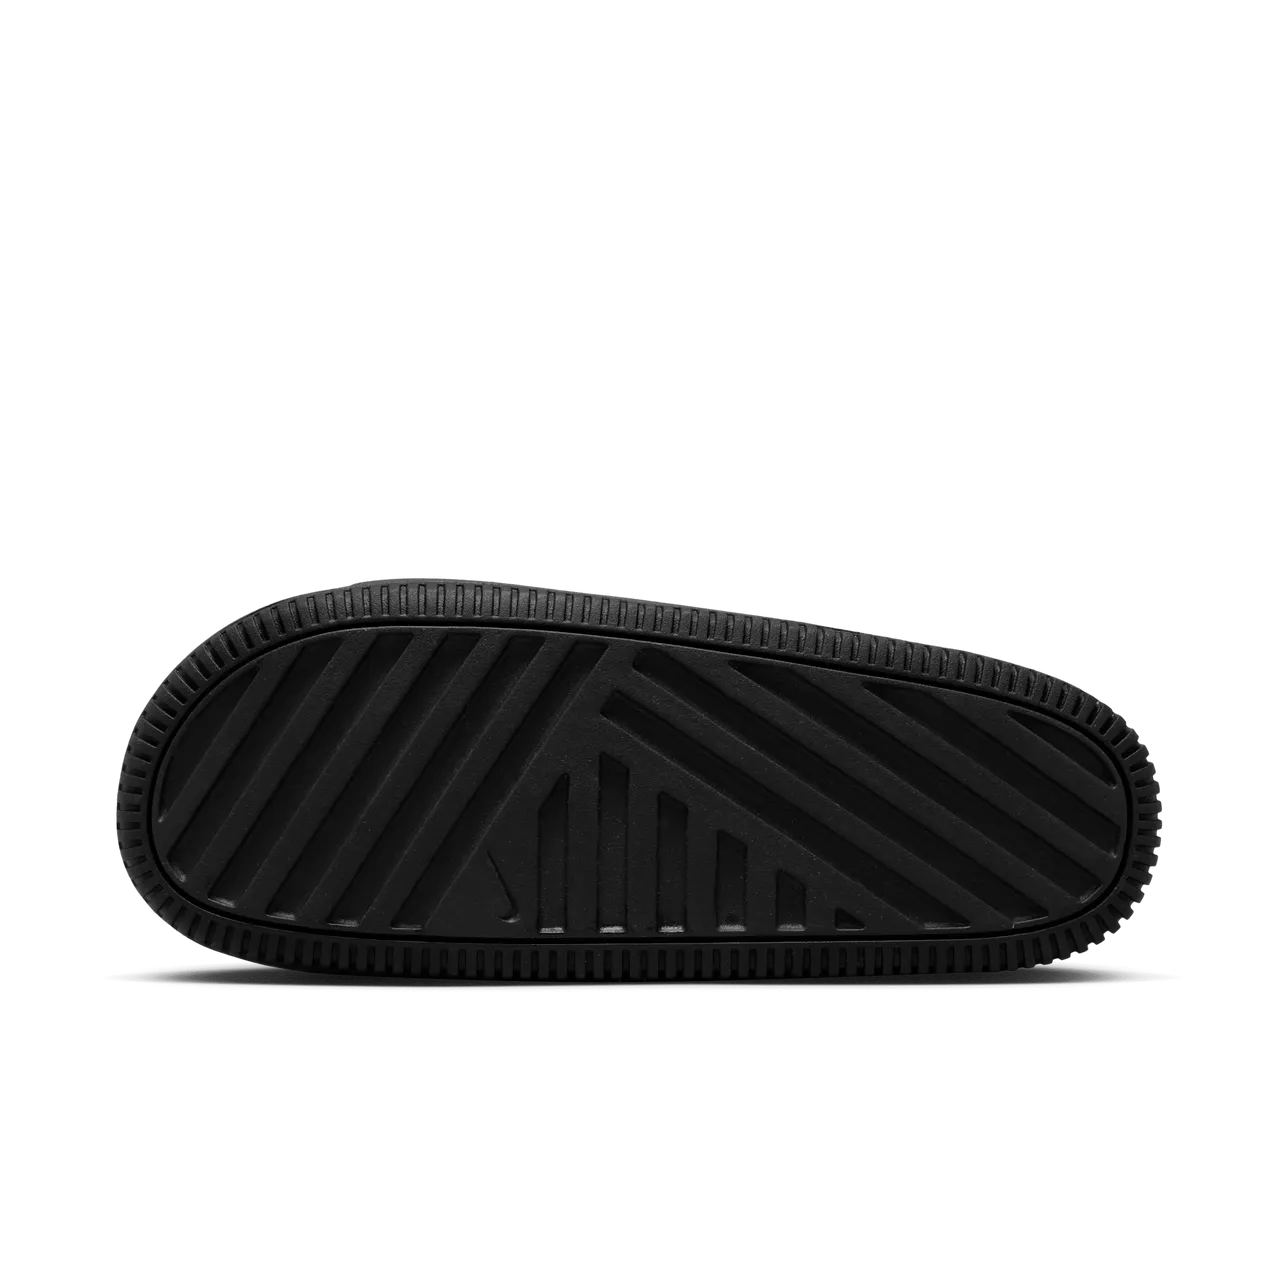 Nike Calm Women's Slides - Black